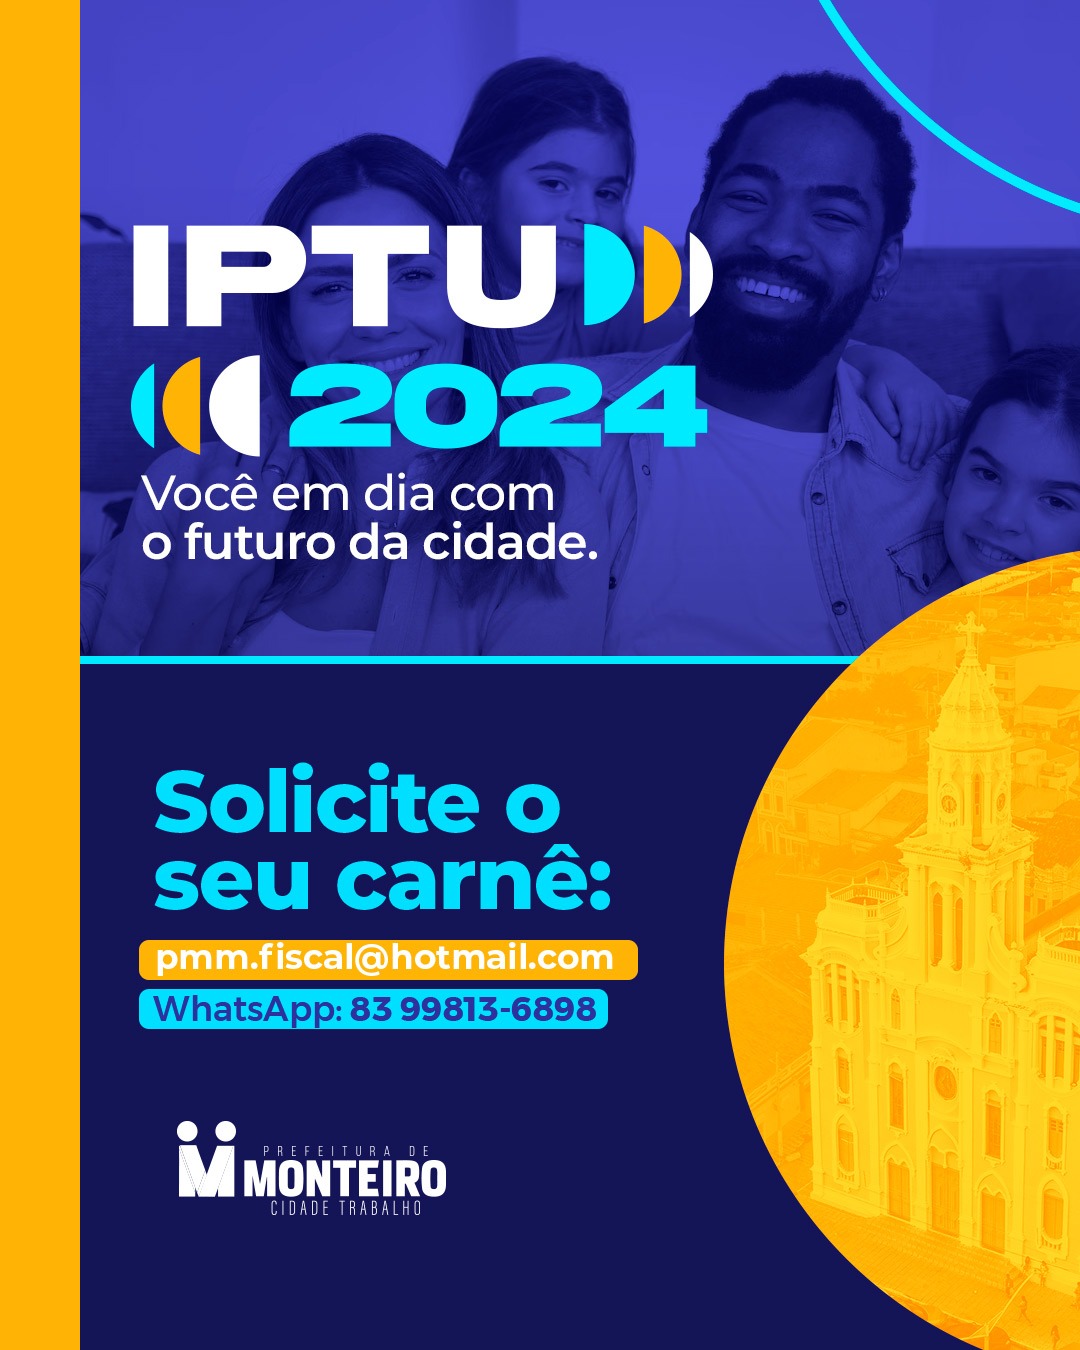 Secretaria de Finanças prorroga prazo para pagamento do IPTU com desconto de 20%